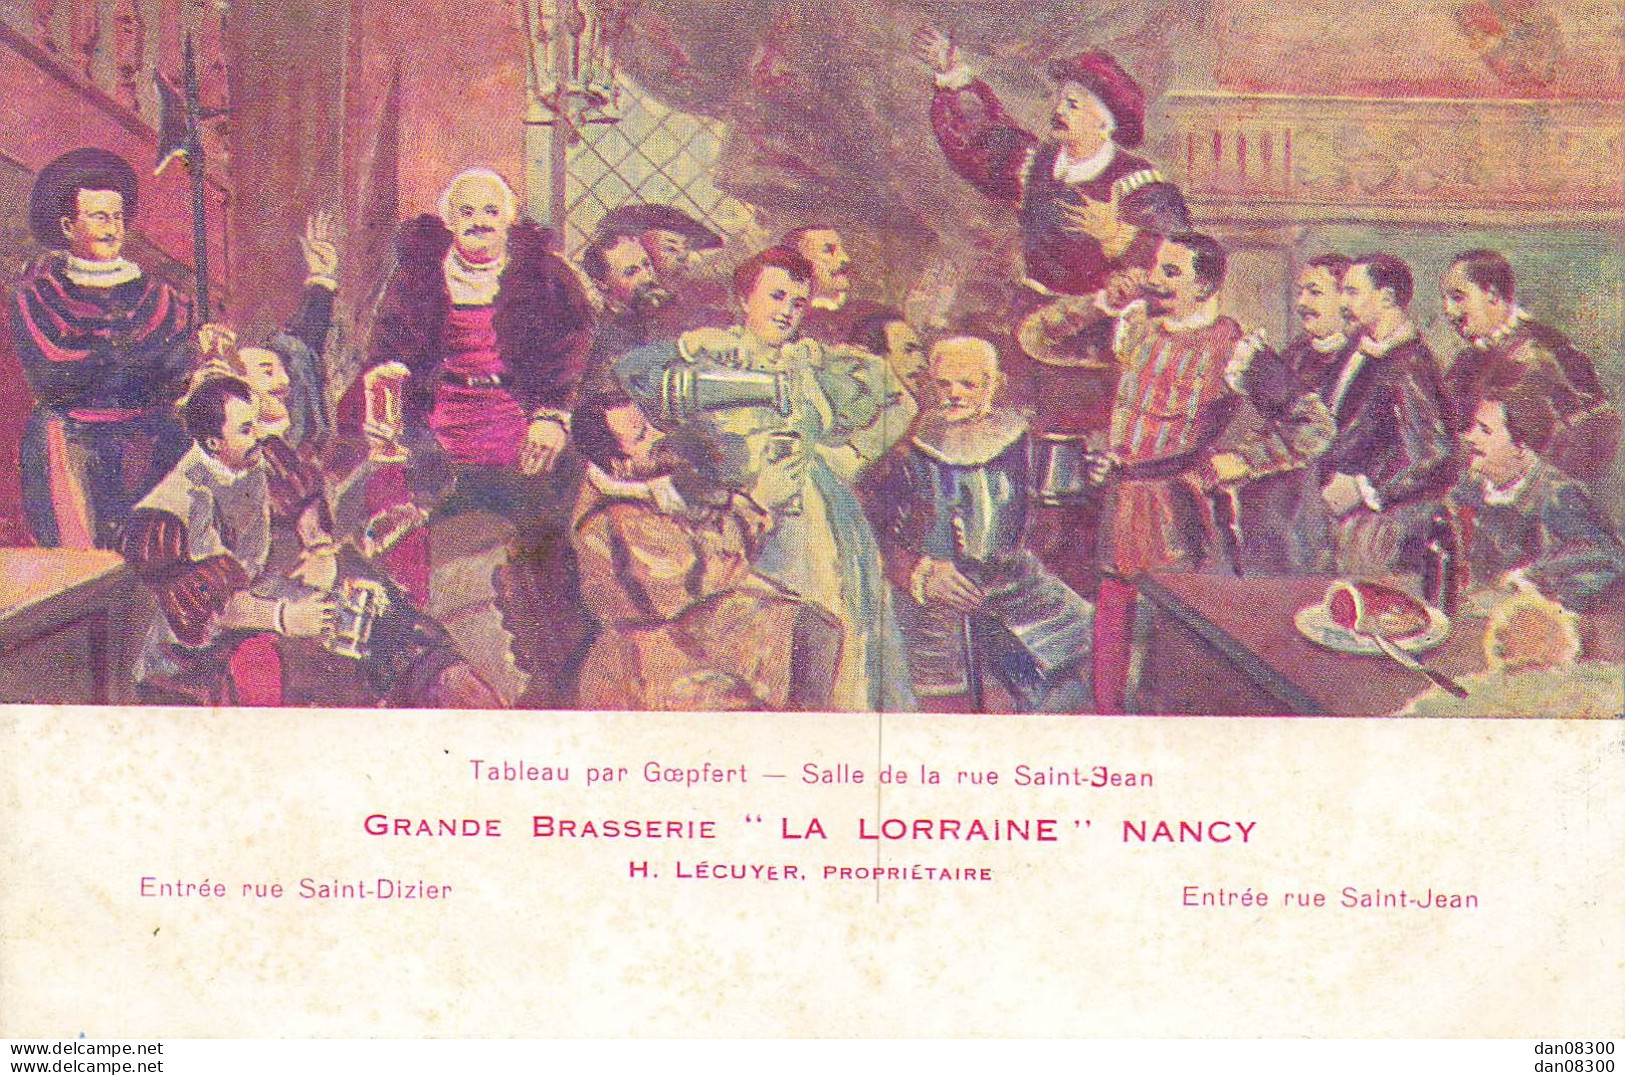 TABLEAU PAR GOEPFERT SALLE DE LA RUE SAINT JEAN GRANDE BRASSERIE LA LORRAINE NANCY - Malerei & Gemälde